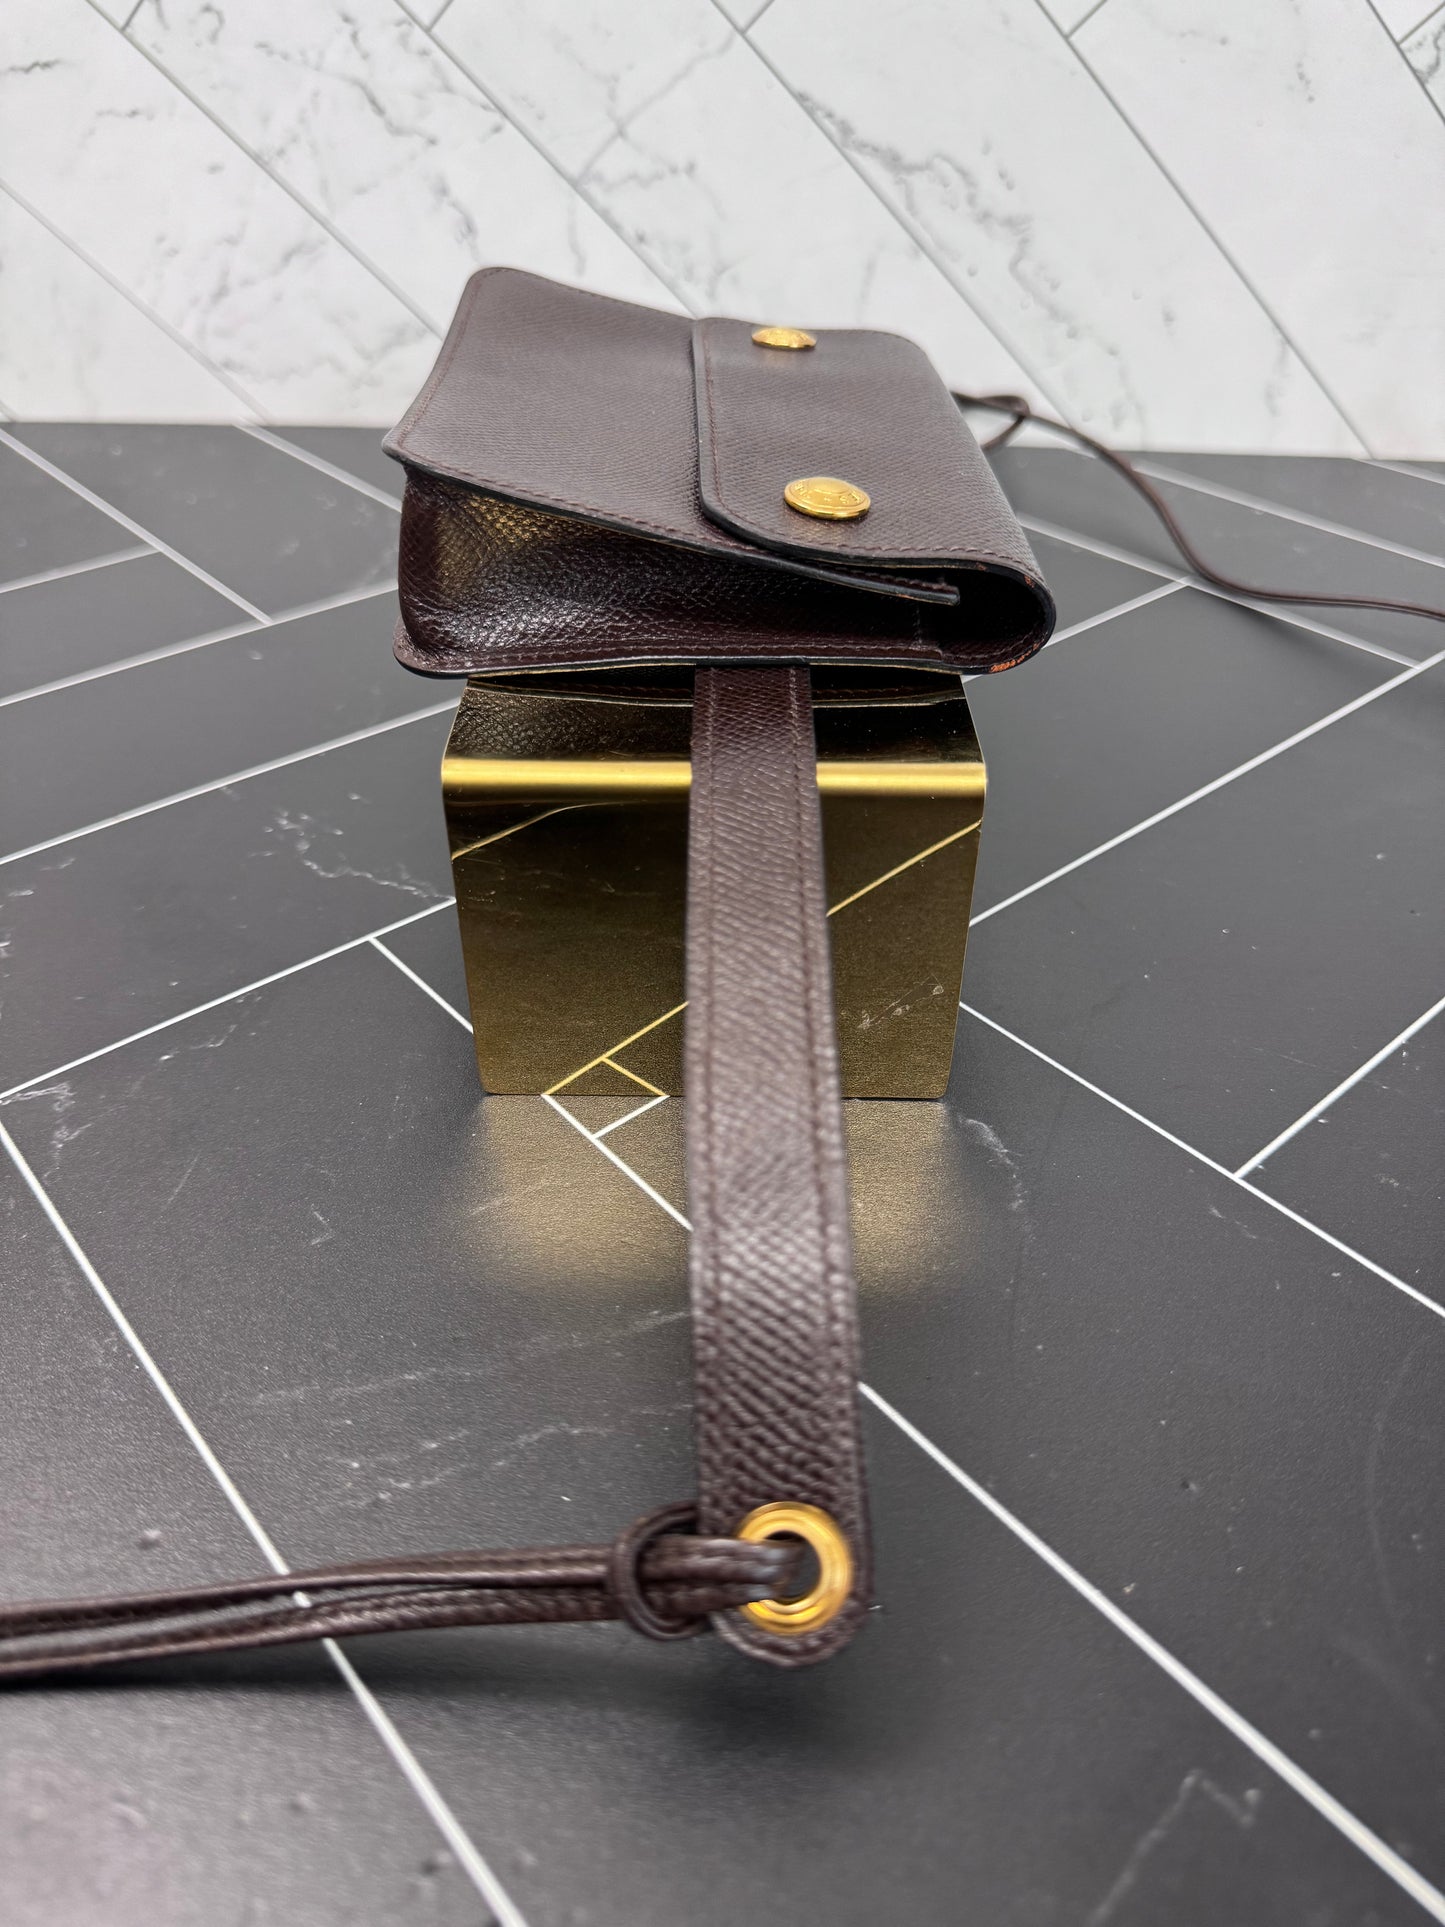 Hermes Brown Leather Belt Bag